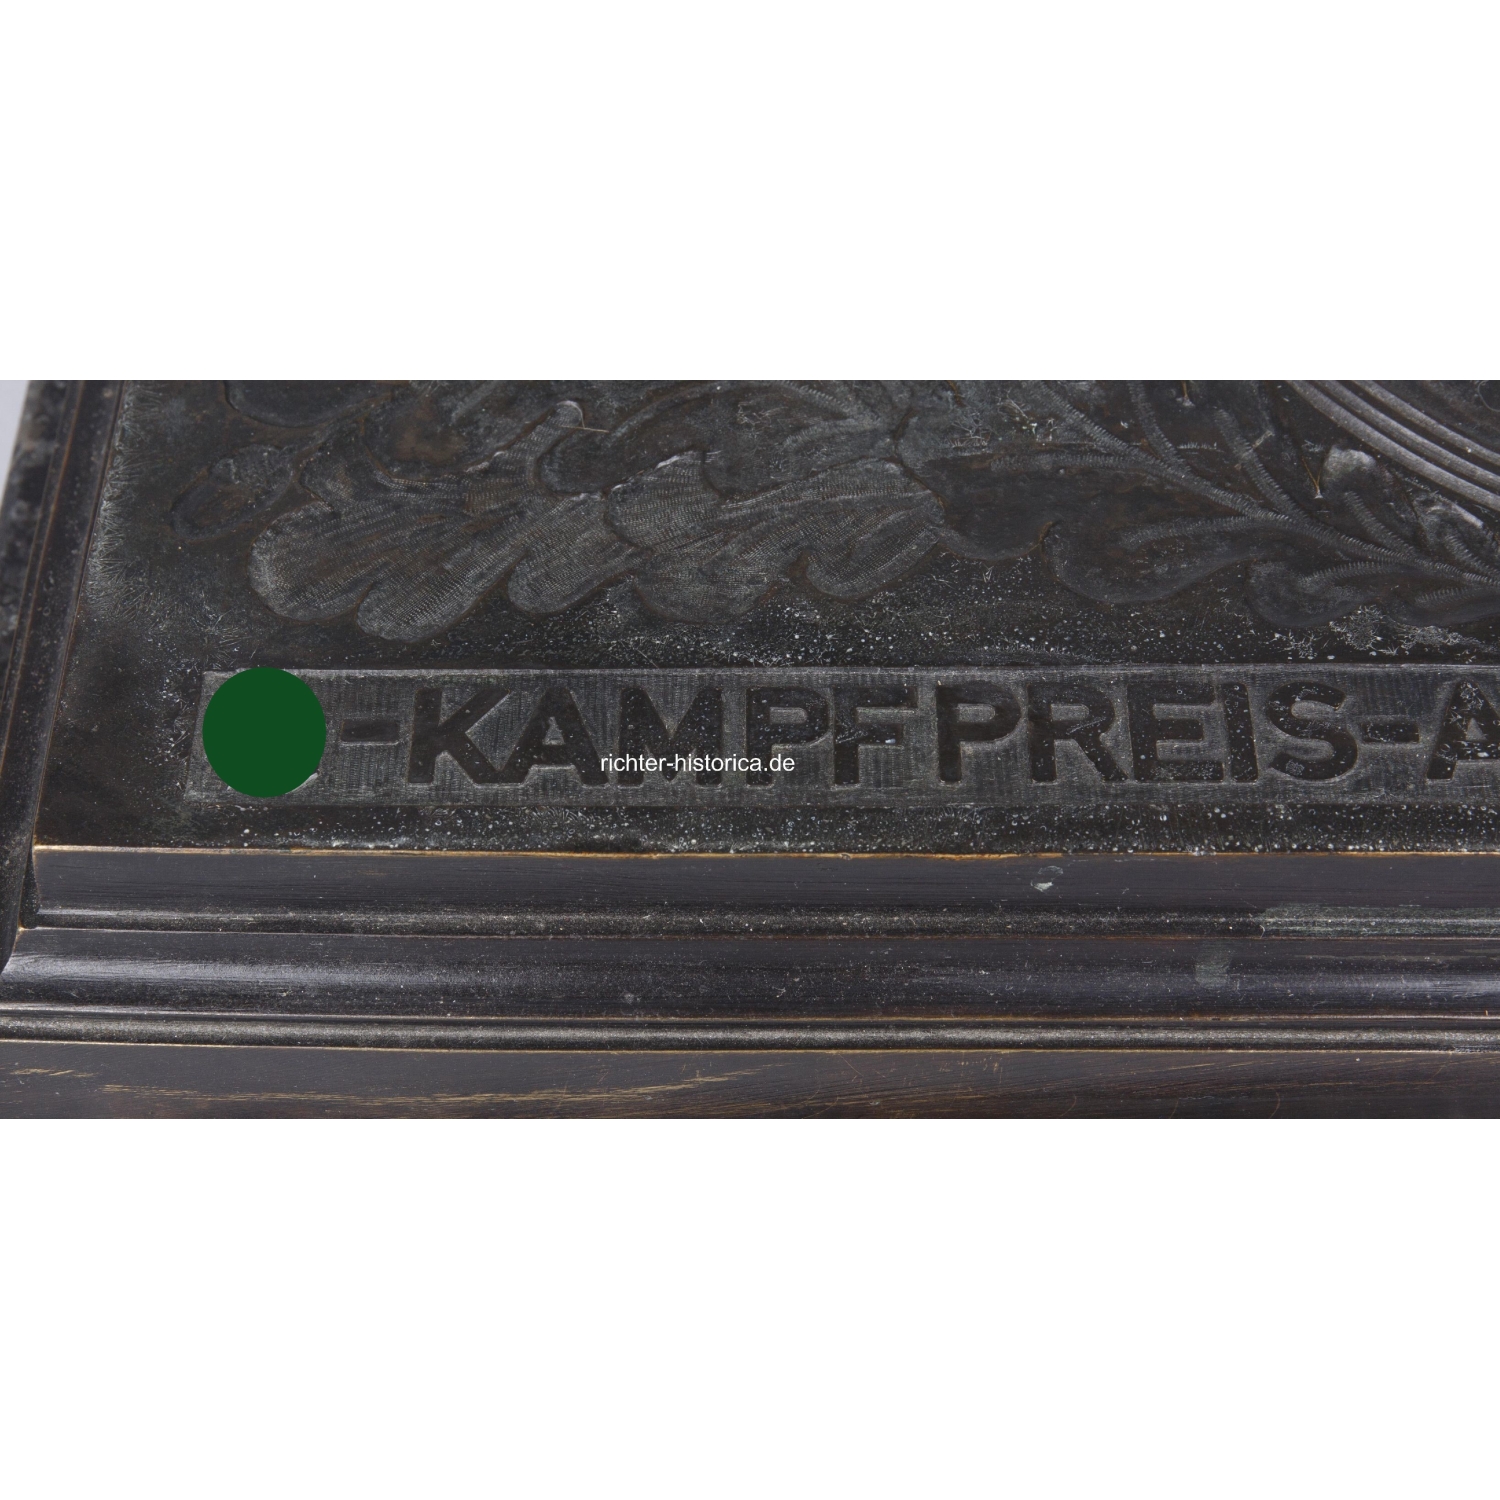 SS-Kampfpreis "A.H 1939" Bronzebüste der Fa. H. Gladenbeck & Sohn, Berlin